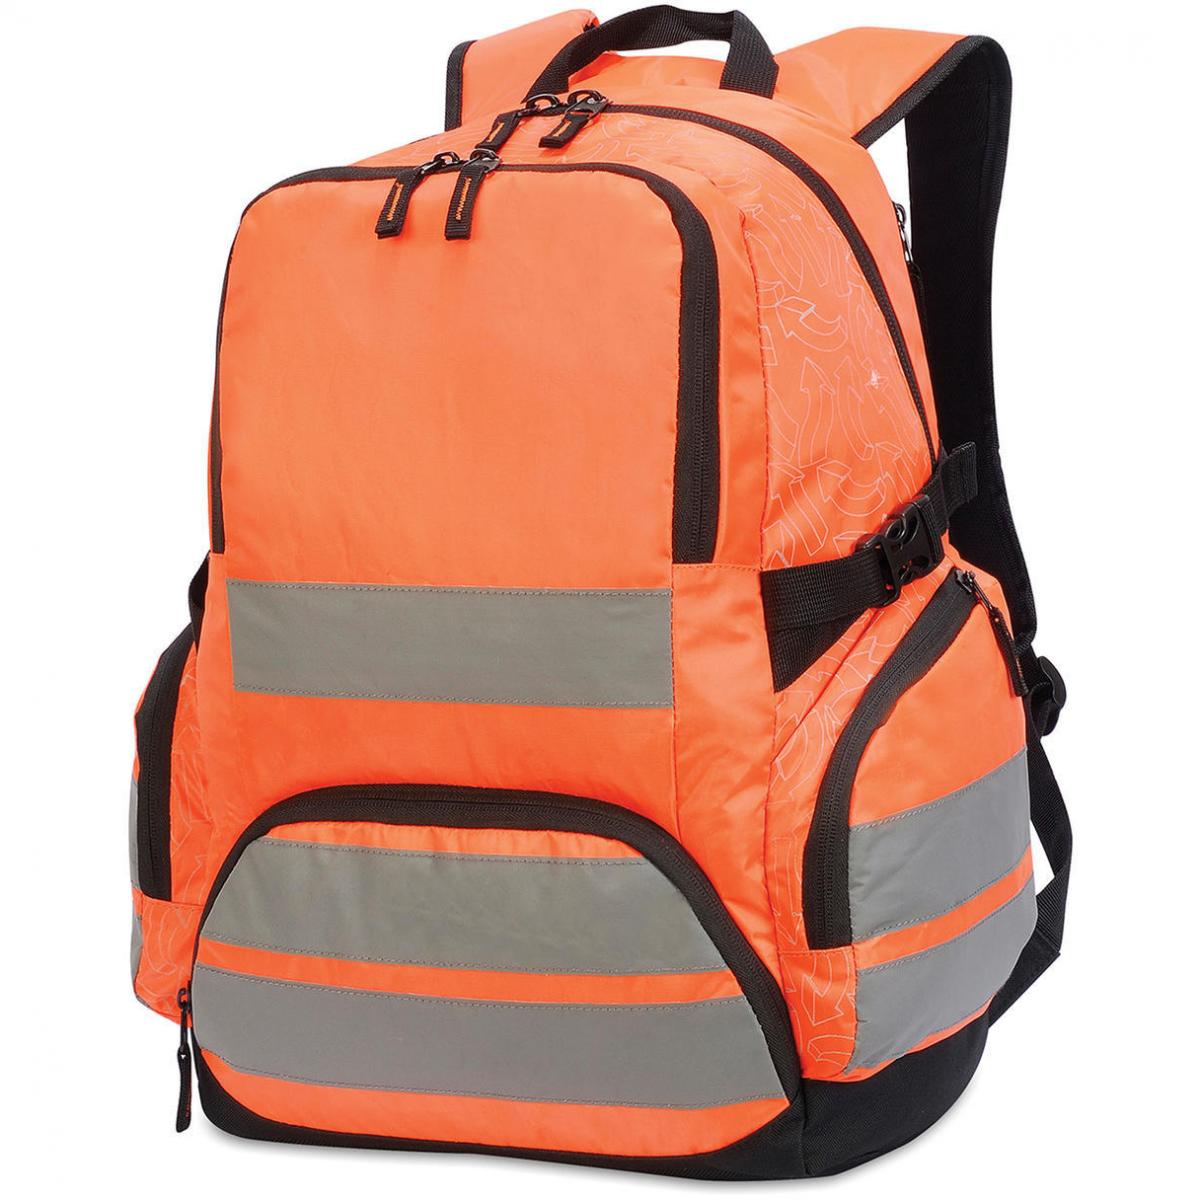 Hersteller: Shugon Herstellernummer: SH7702 Artikelbezeichnung: London Hi-Vis Backpack - Sicherheitsrucksack - 30 x 48 x 20 Farbe: Hi-Vis Orange